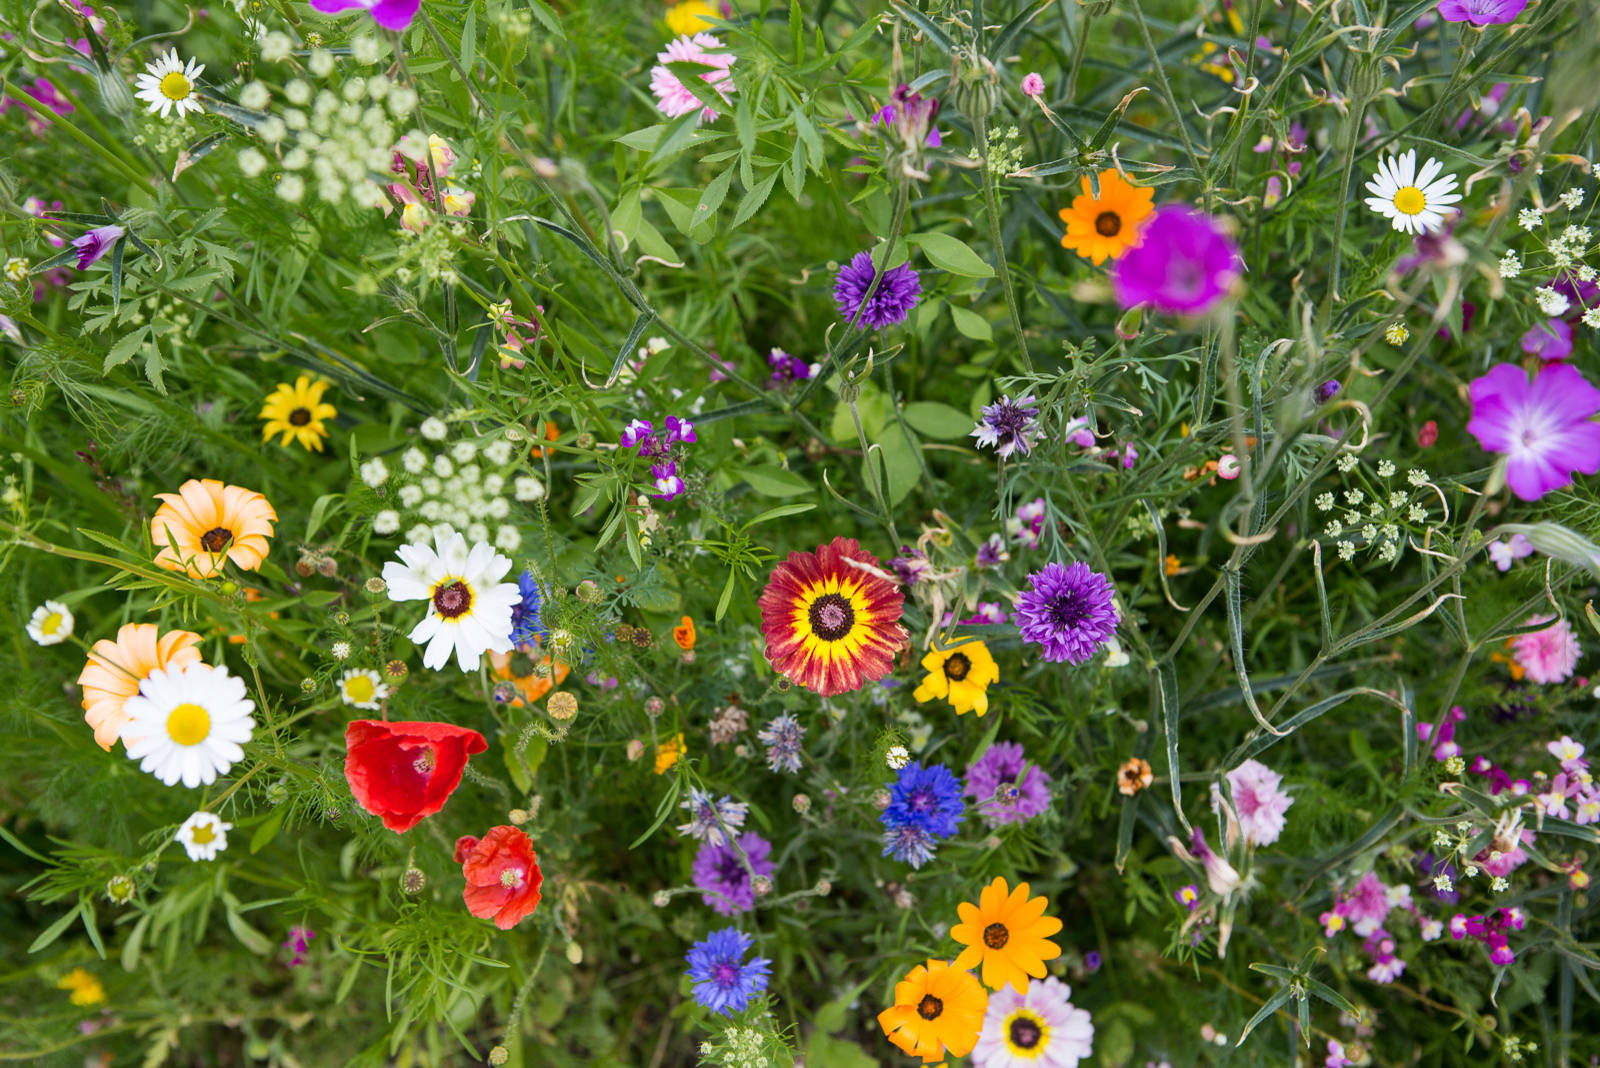 Клумба непрерывного цветения — названия и фото растений с вес�ны до осени